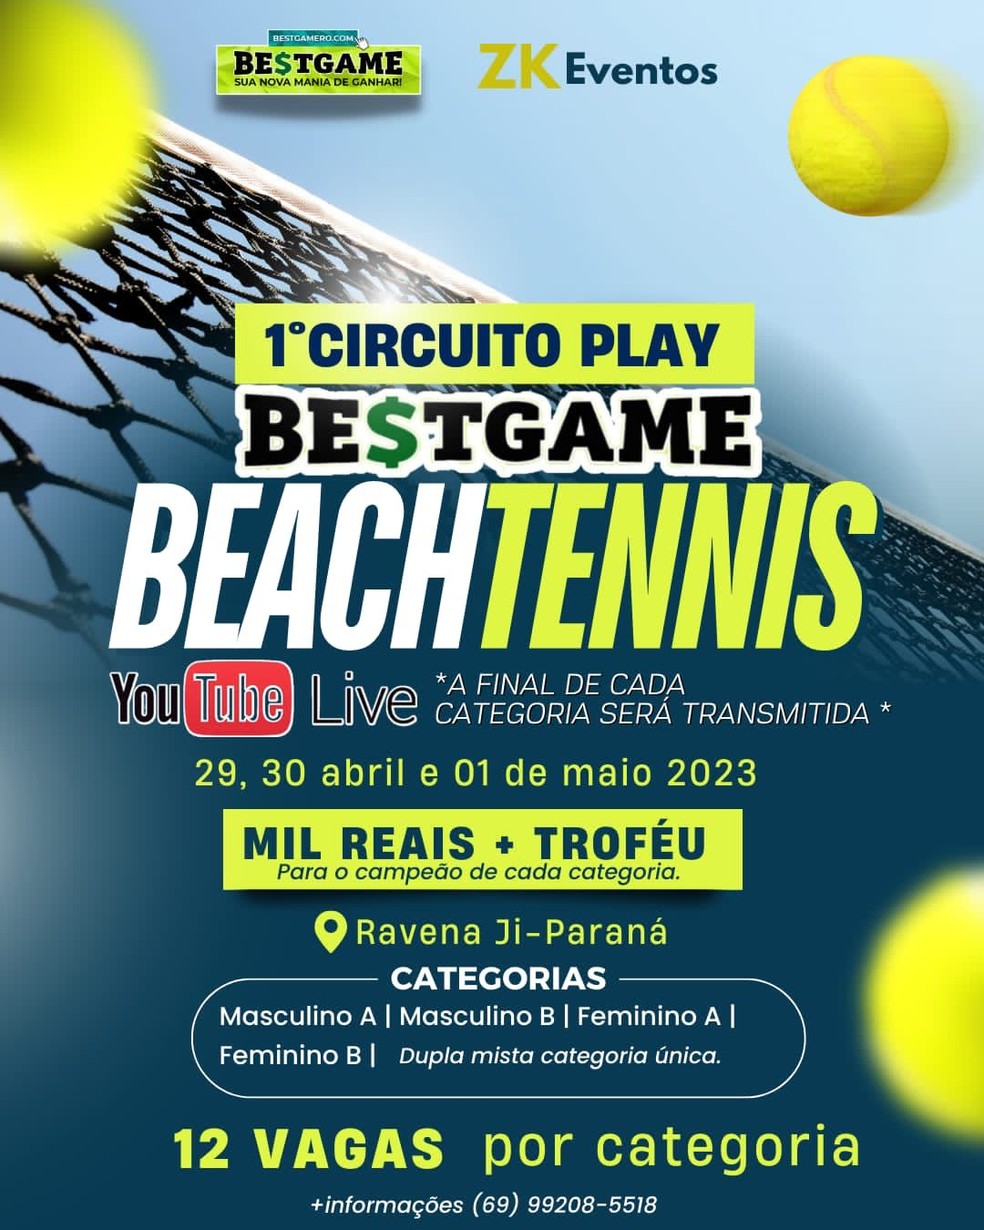 Copa do Mundo de beach tennis 2023 - São Paulo - Esportividade